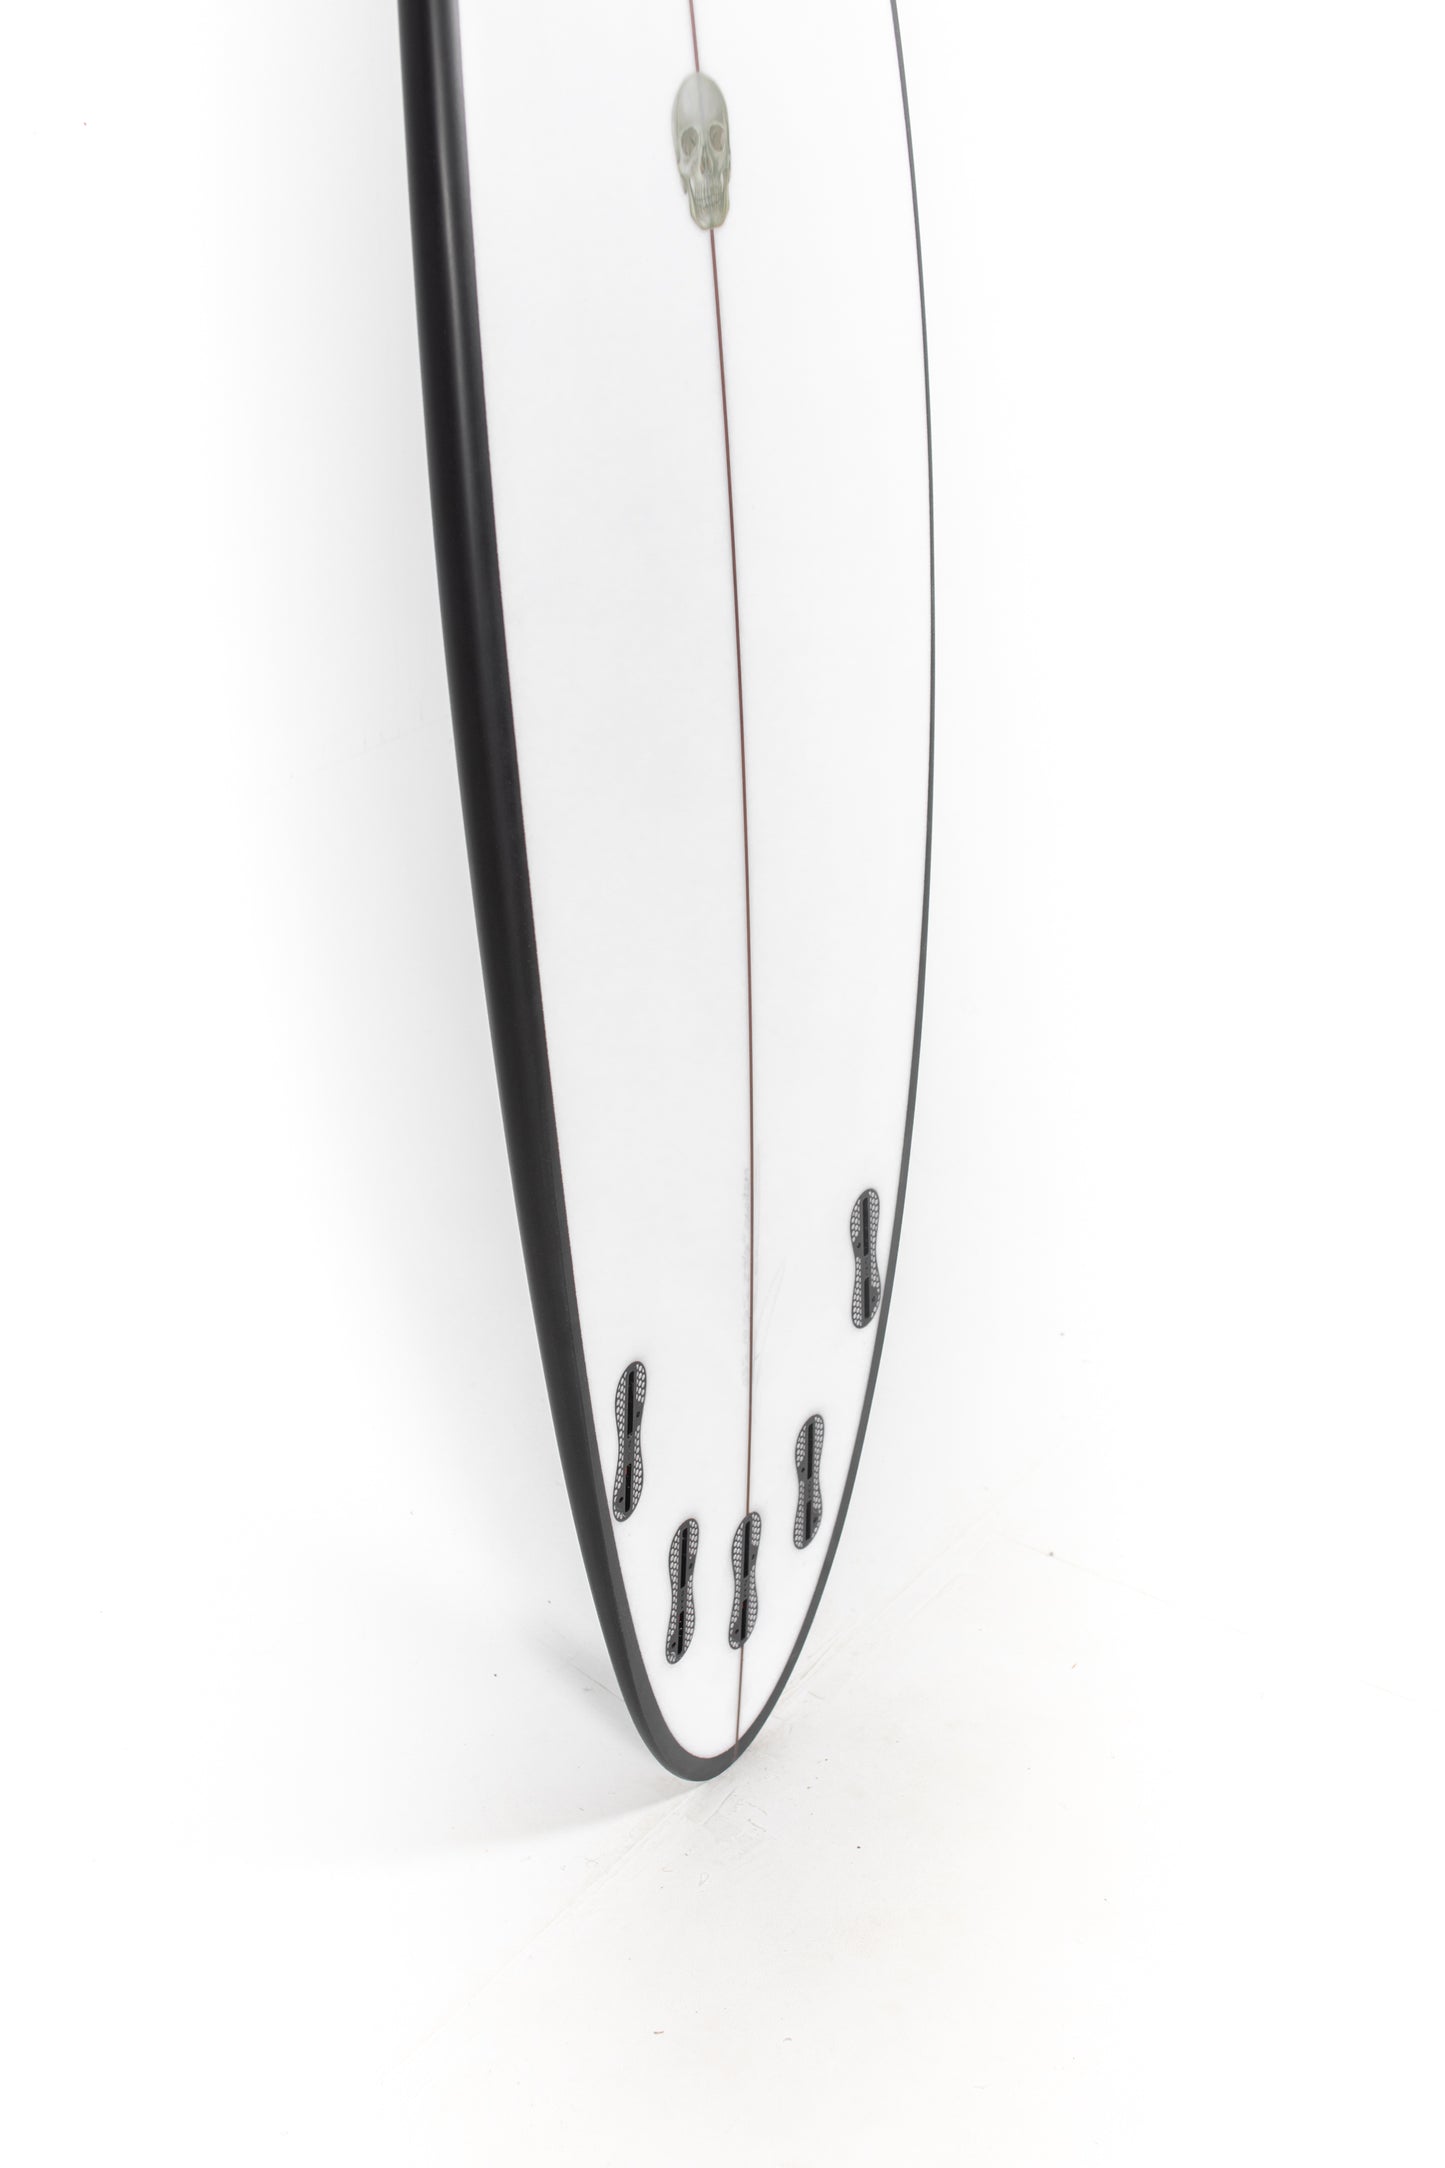 
                  
                    Pukas Surf Shop - Christenson Surfboards - OP4 - 6'0" x 19 1/2 x 2 9/16 x 30.59L - CX04819
                  
                